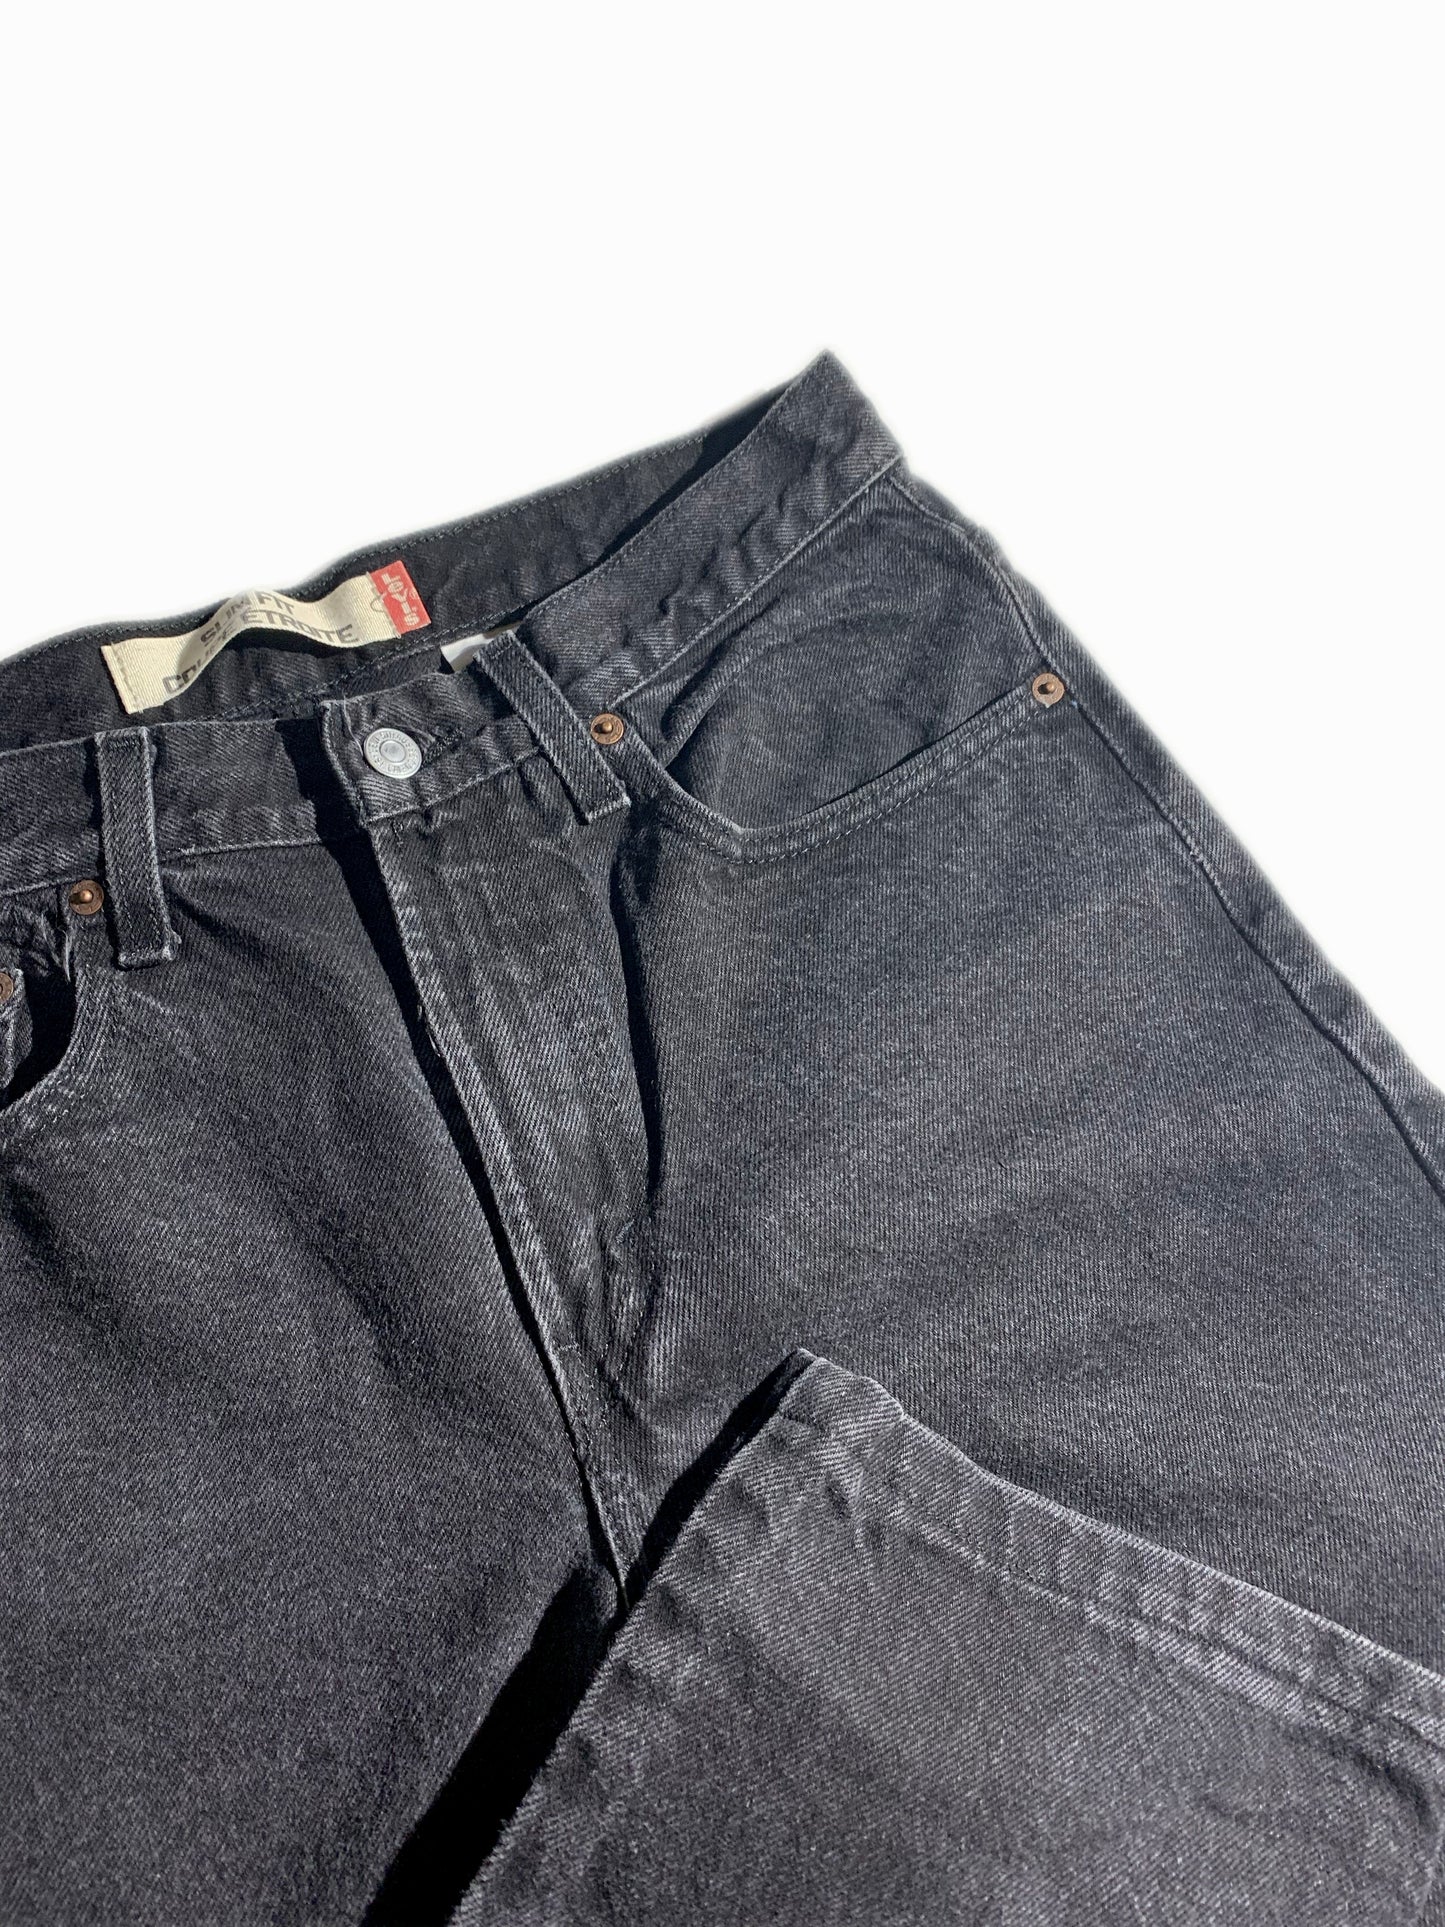 Vintage Slim Fit 511 Levi’s Jeans